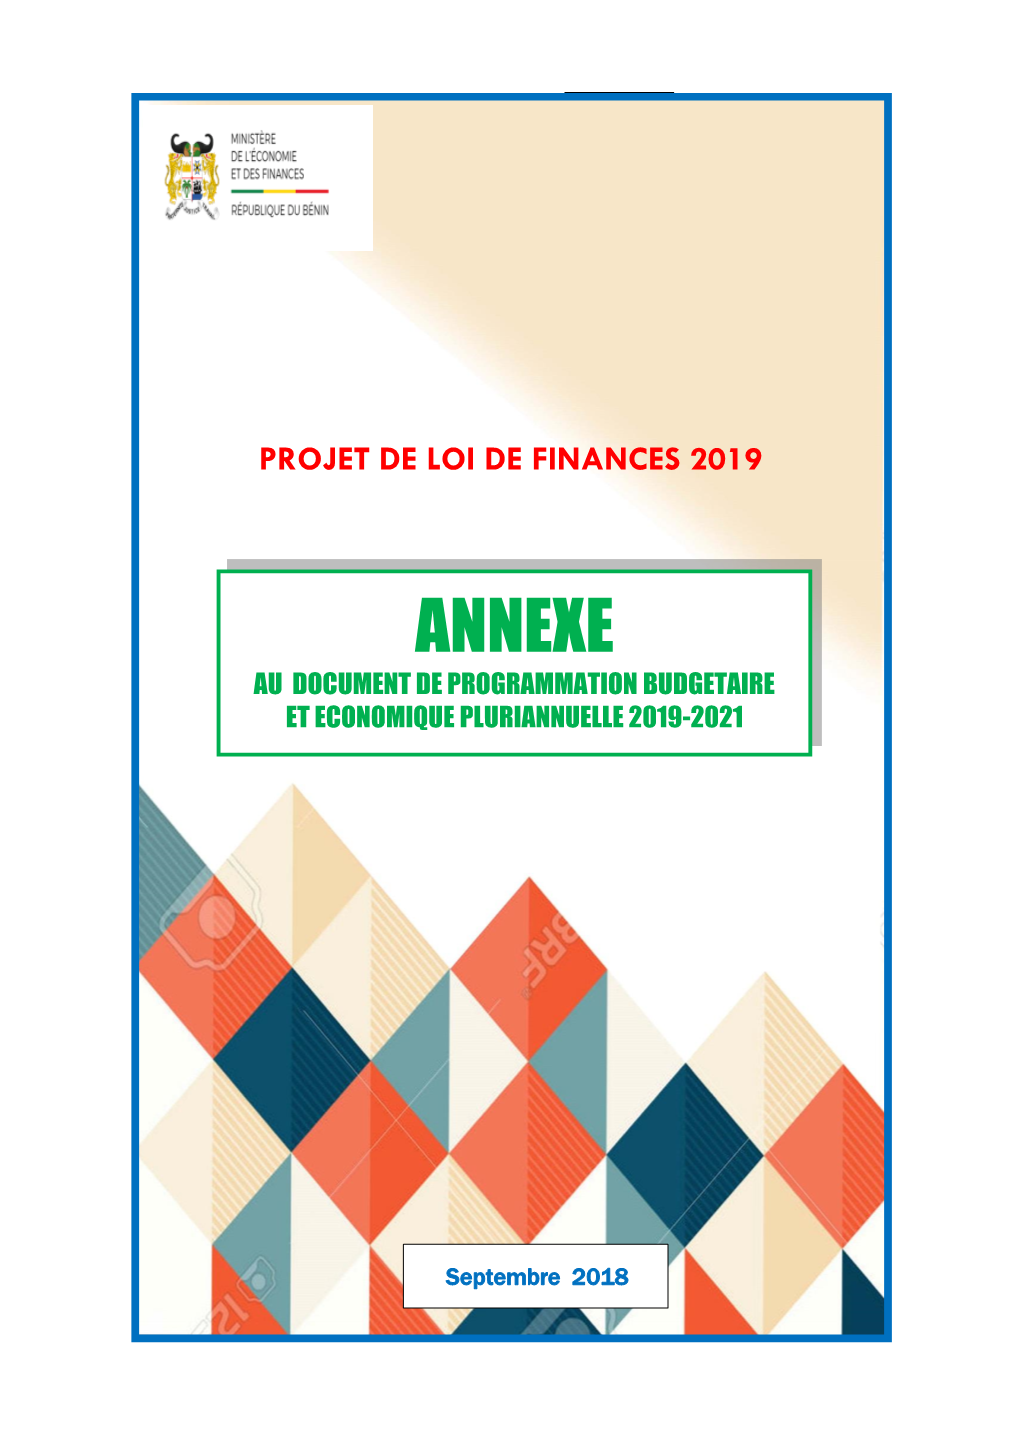 Annexe Au Document De Programmation Budgetaire Et Economique Pluriannuelle 2019-2021